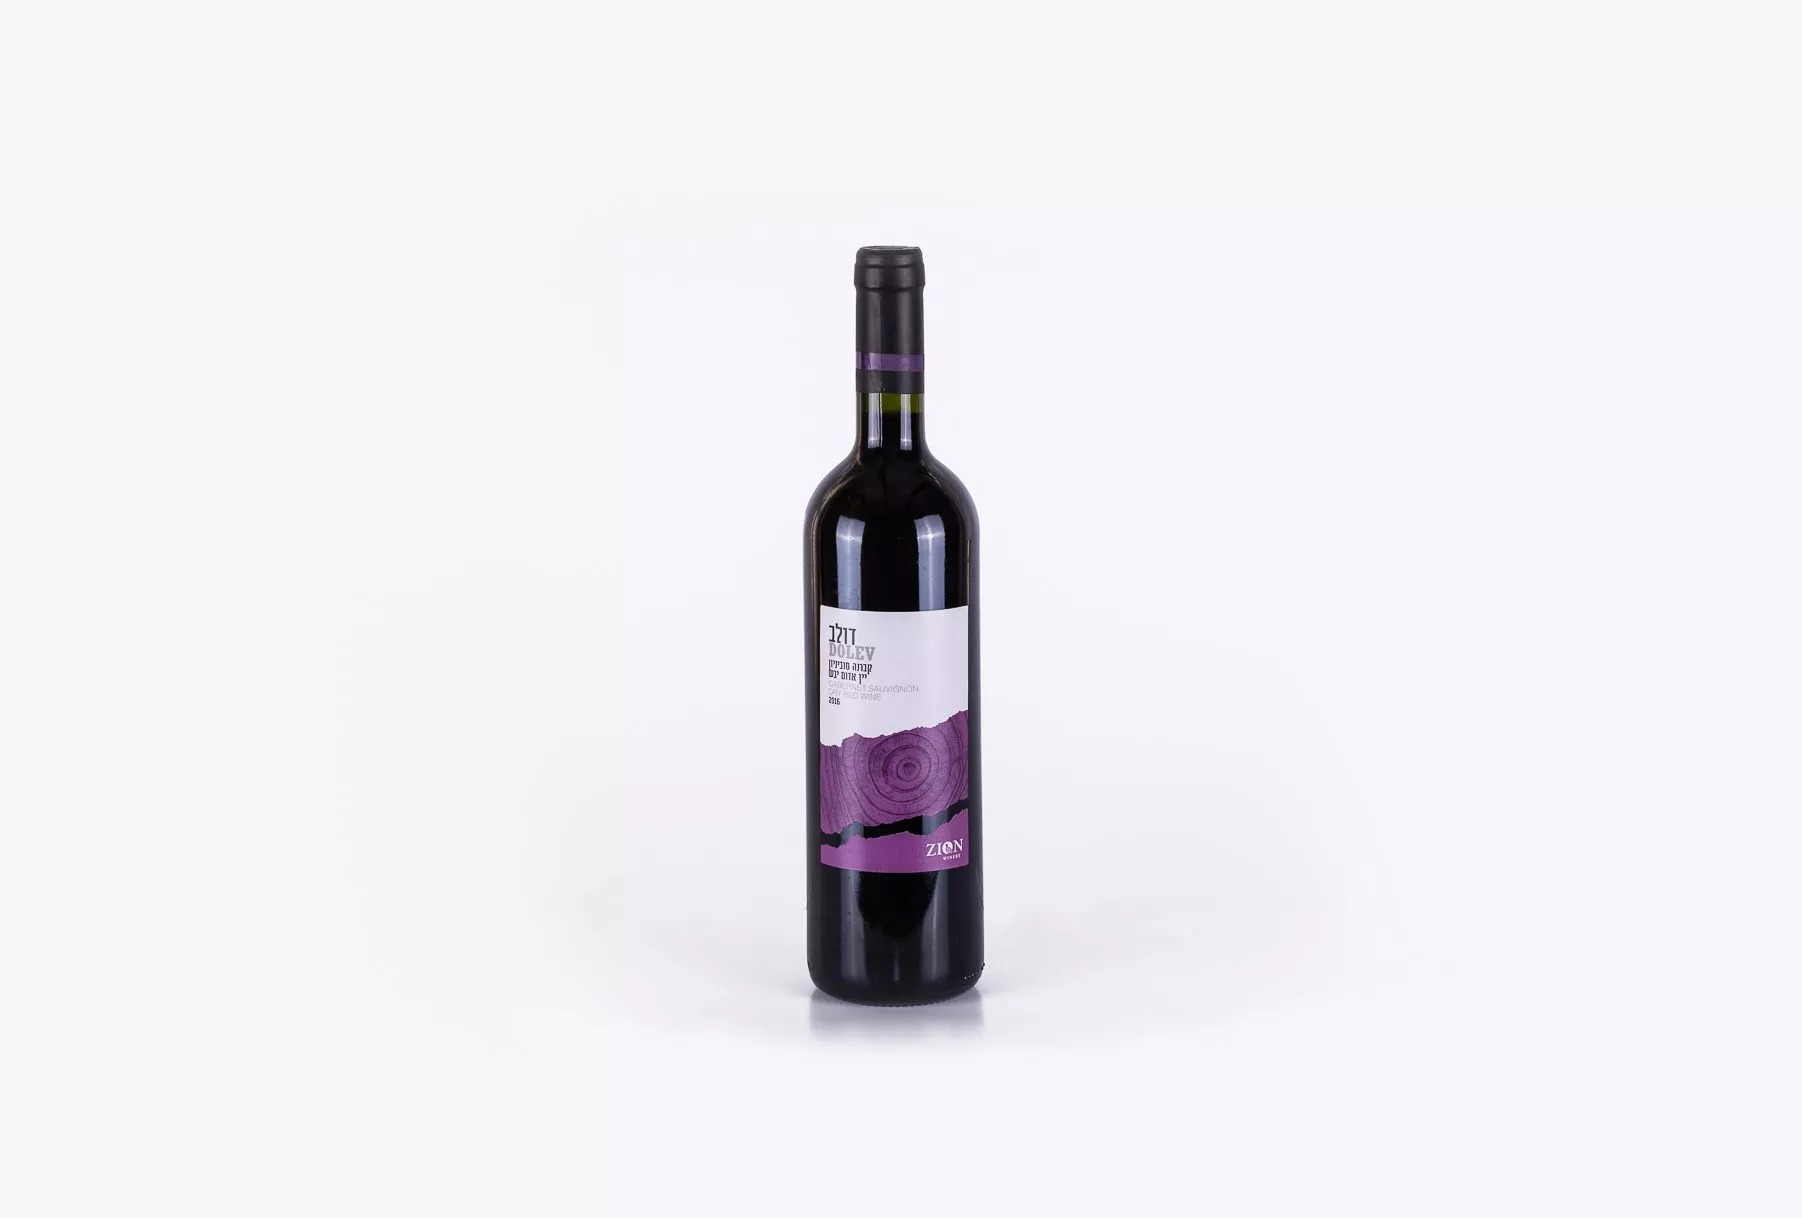 הדפסת תוויות עבור בקבוקי היין האדום של יקב דולב. התוויות עוצבה בשני צבעים: לבן וסגול וציור מאוד מעניין שנותן ליין מראה יוקרתי.